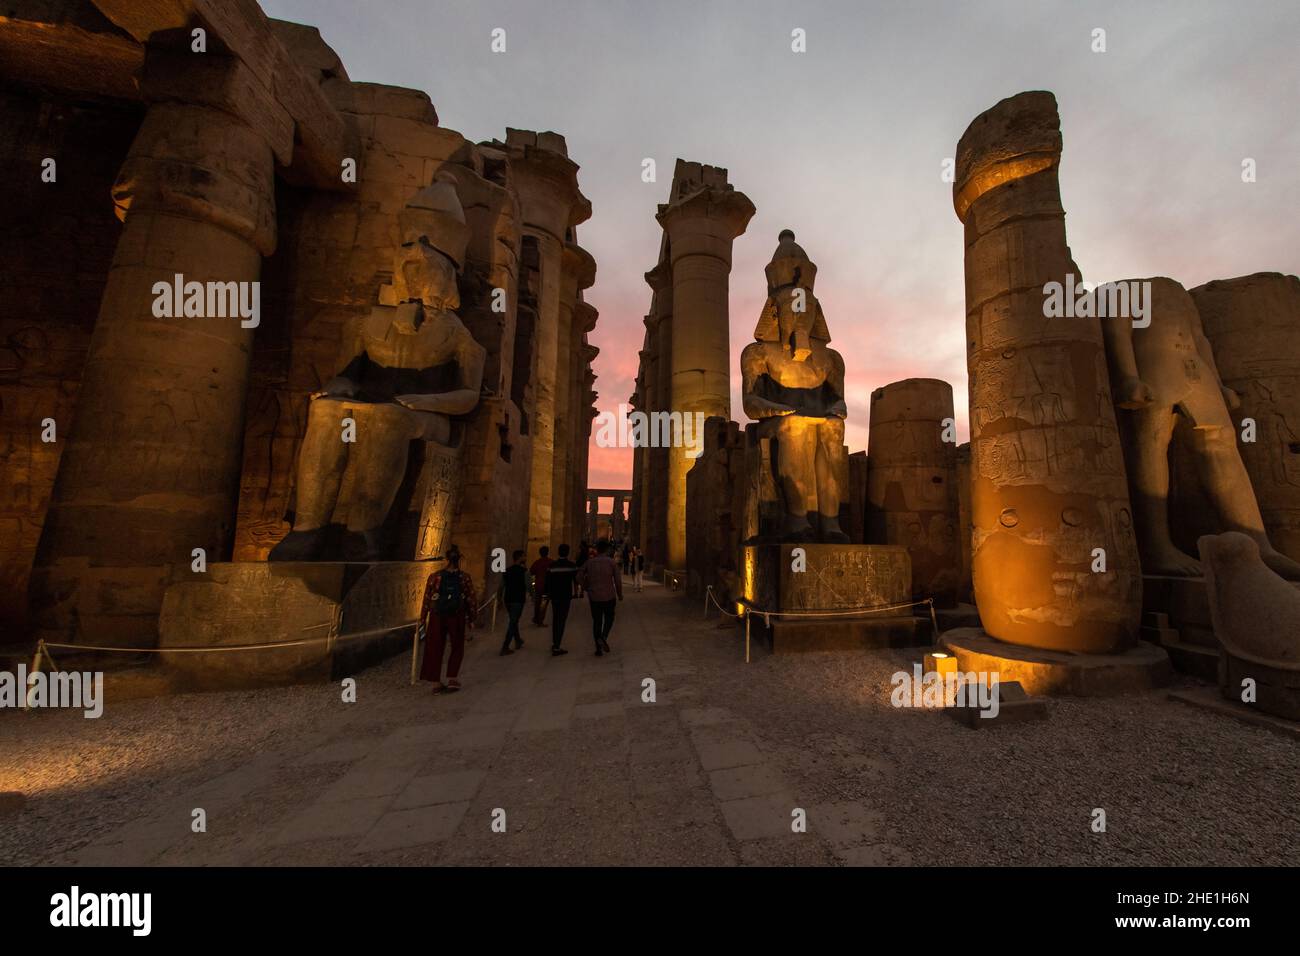 Statue e colonne al tempio di Luxor in Egitto illuminate da luci la sera, mentre l'oscurità cade per un effetto bello e drammatico. Foto Stock